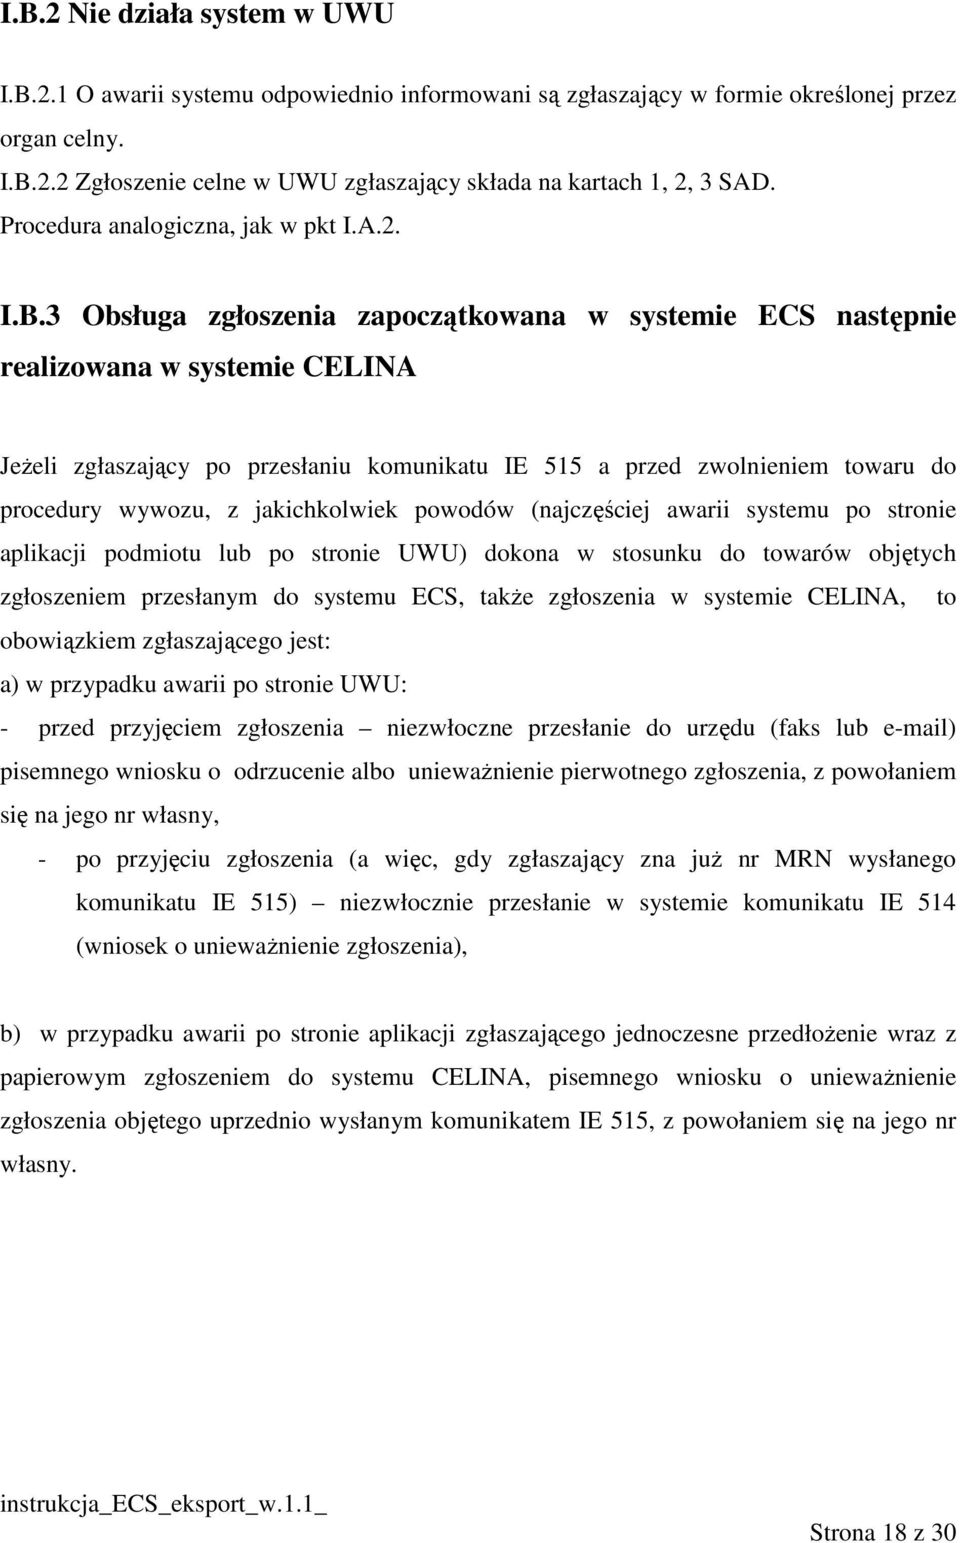 3 Obsługa zgłoszenia zapoczątkowana w systemie ECS następnie realizowana w systemie CELINA JeŜeli zgłaszający po przesłaniu komunikatu IE 515 a przed zwolnieniem towaru do procedury wywozu, z